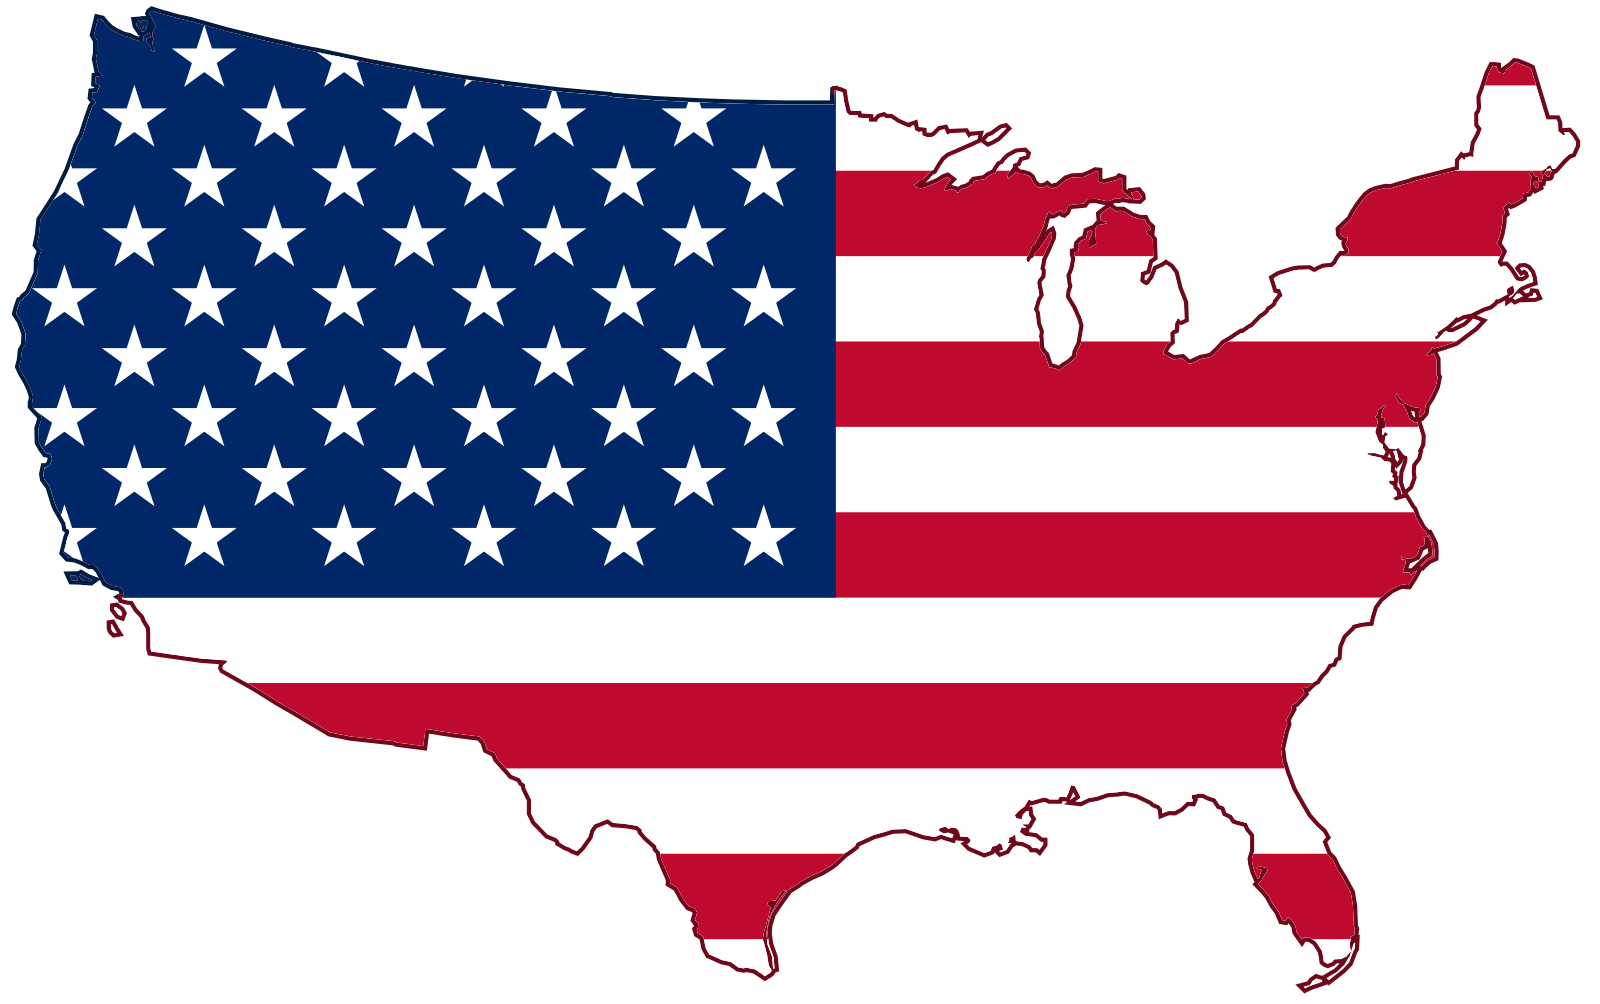 USA_Flag_Map